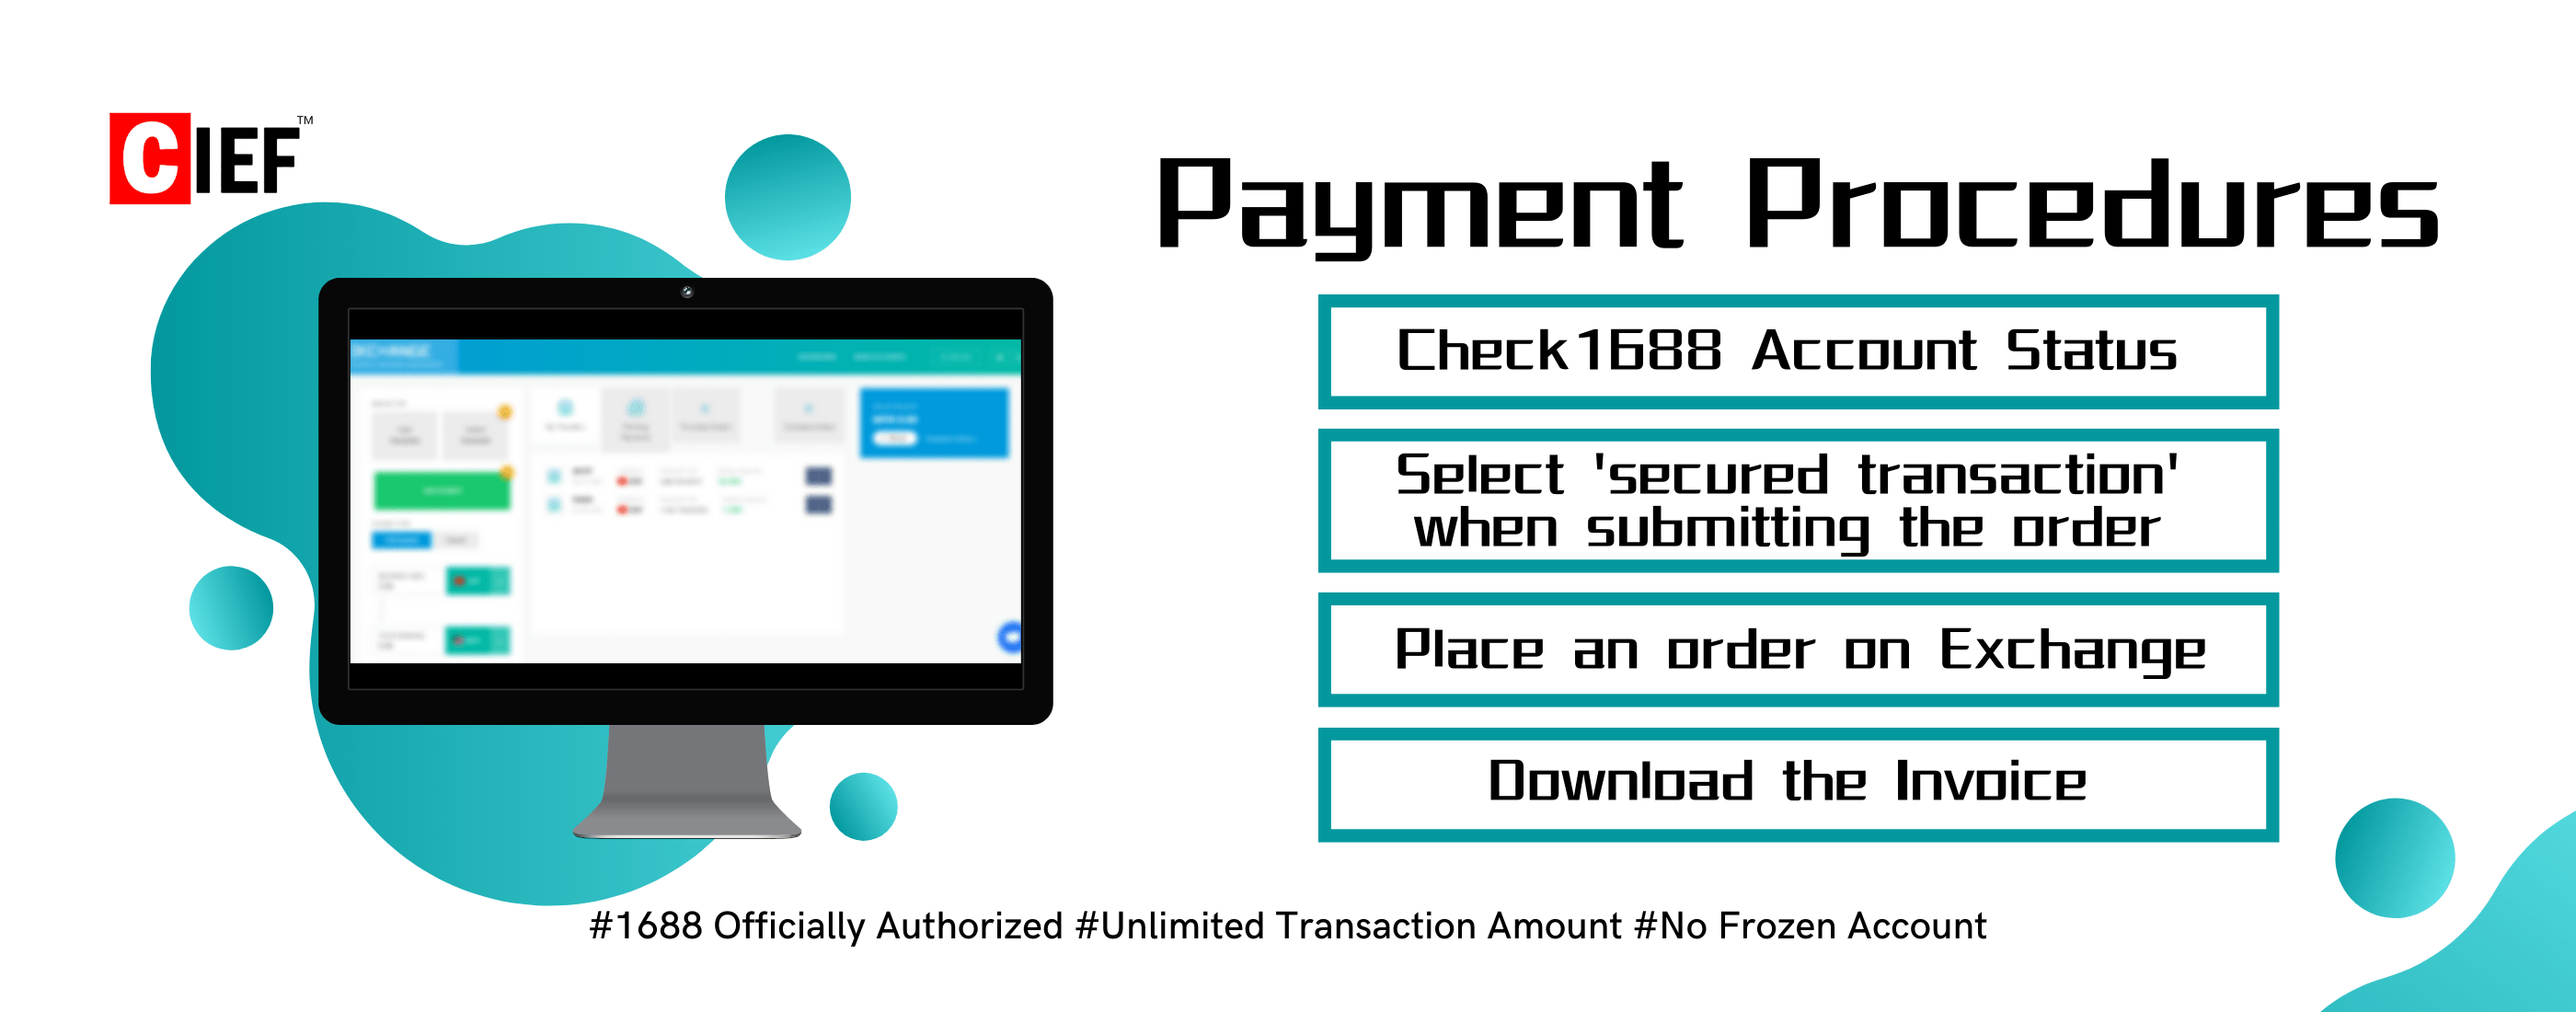 payment procedures